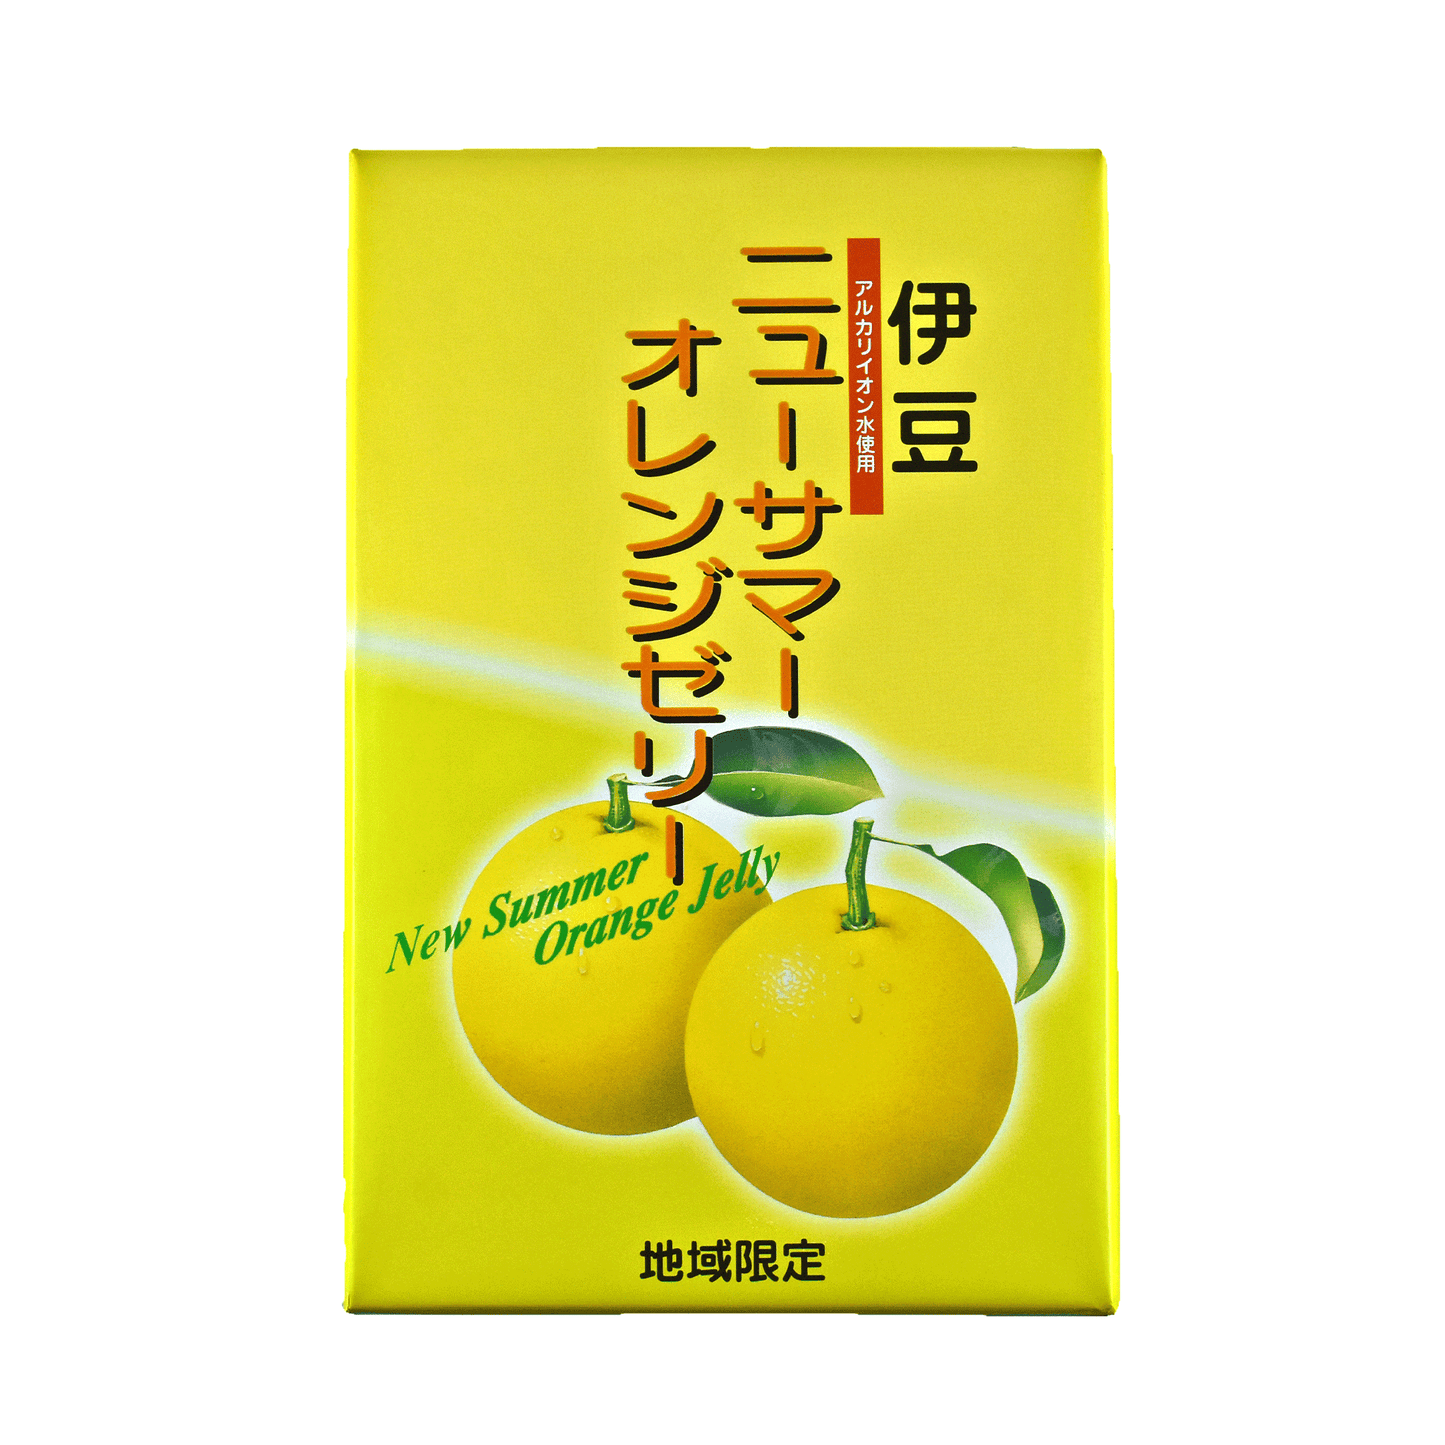 ニューサマーオレンジゼリー(12個入)